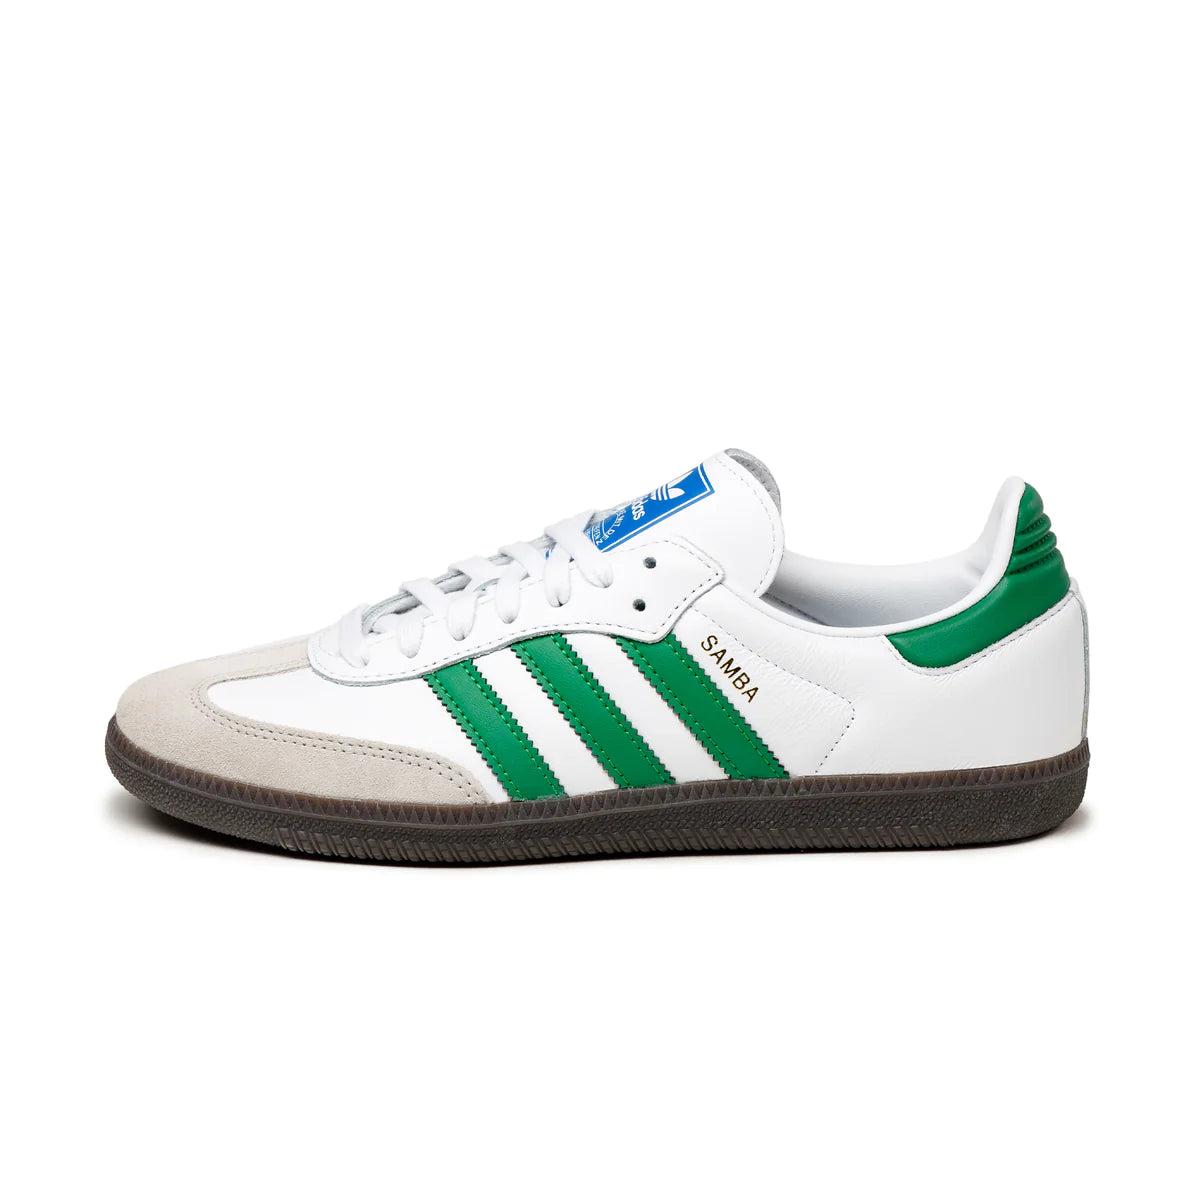 adidas Originals Samba OG White/Green